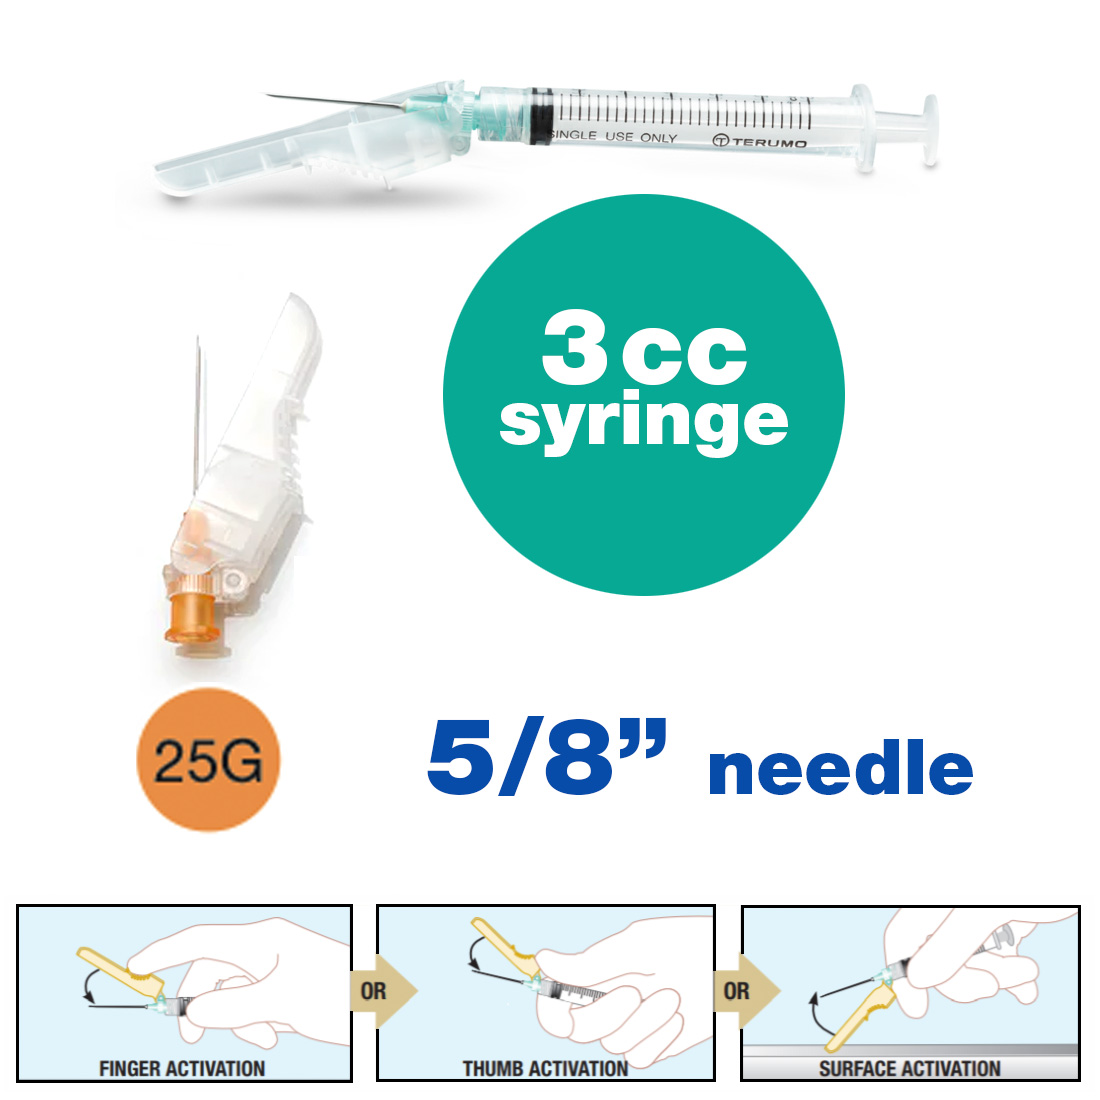 SurGuard® 3 Safety Hypodermic Needle, 3CC Syringe with 25G x 5/8" Needle - 100/Box